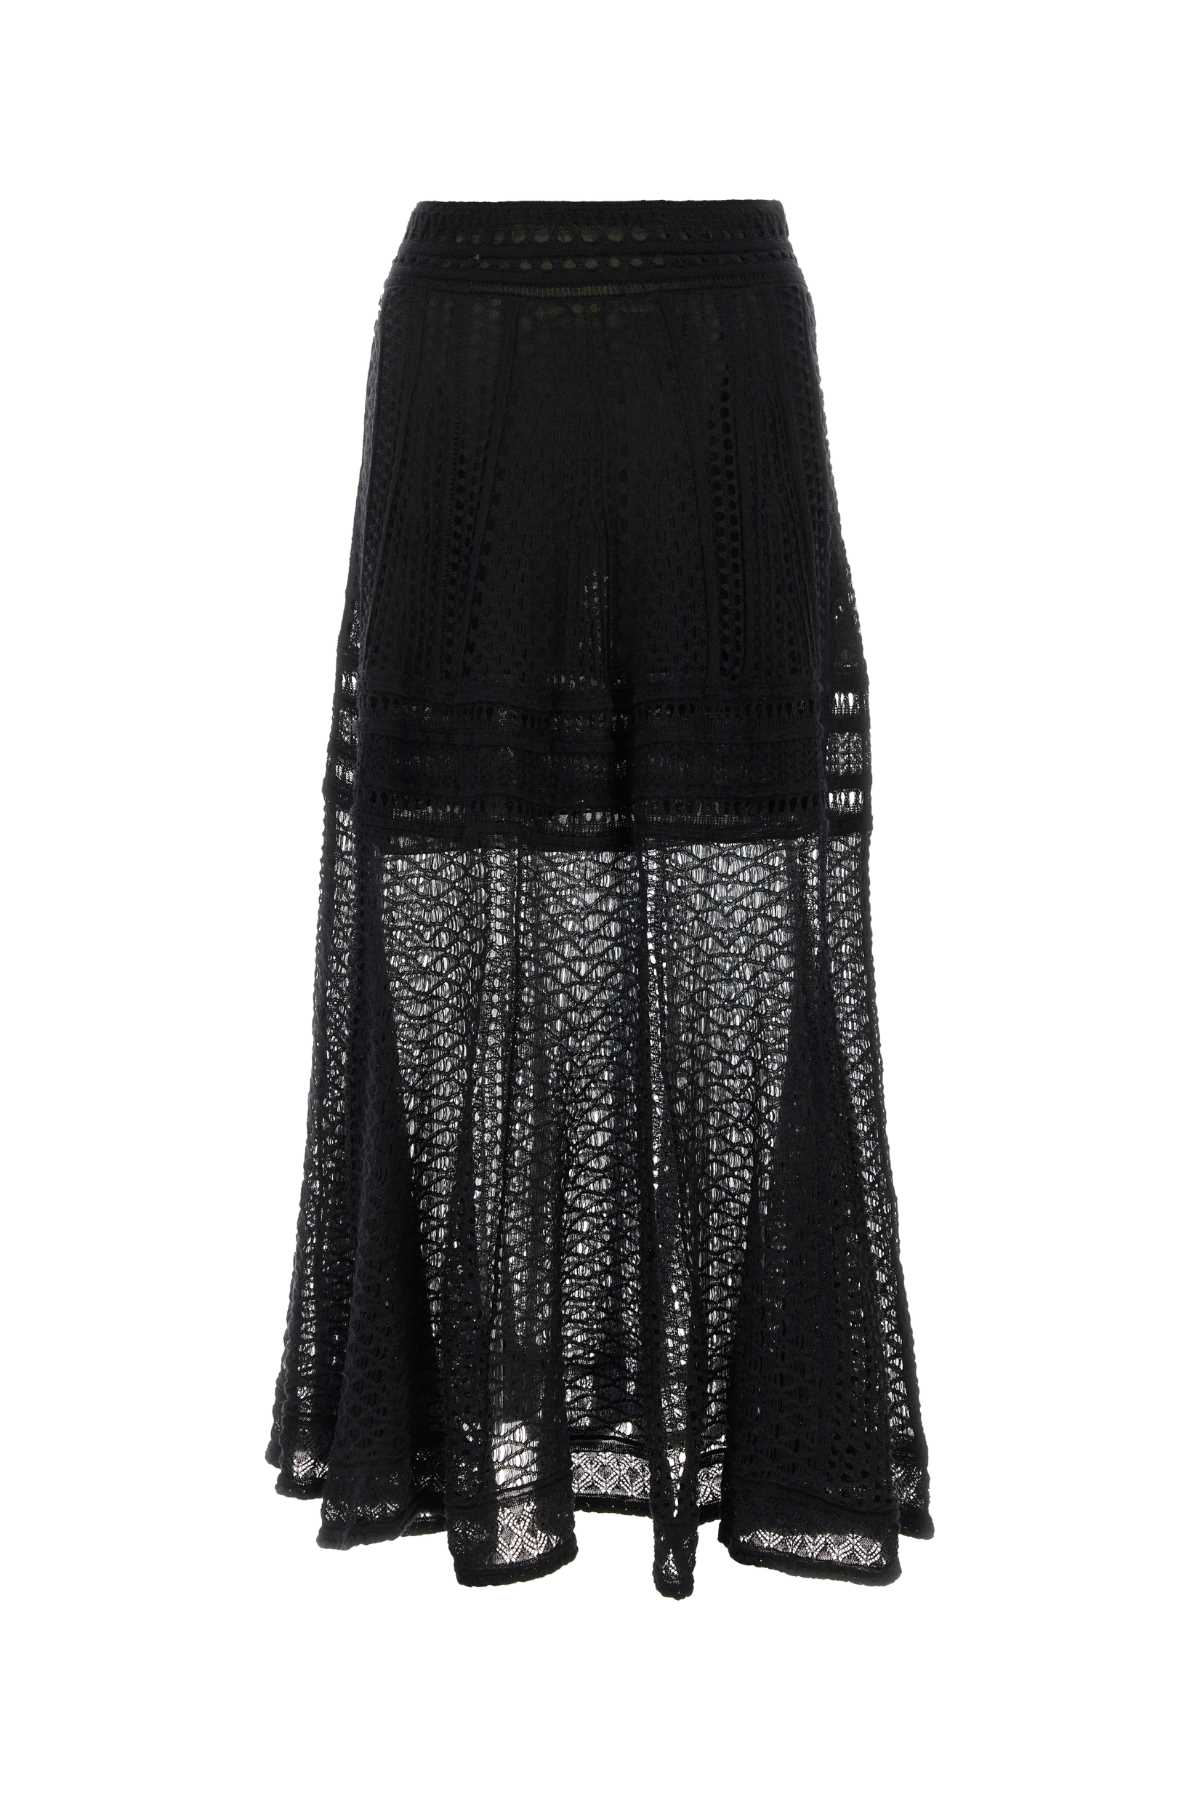 Chloé Black Linen Blend Skirt